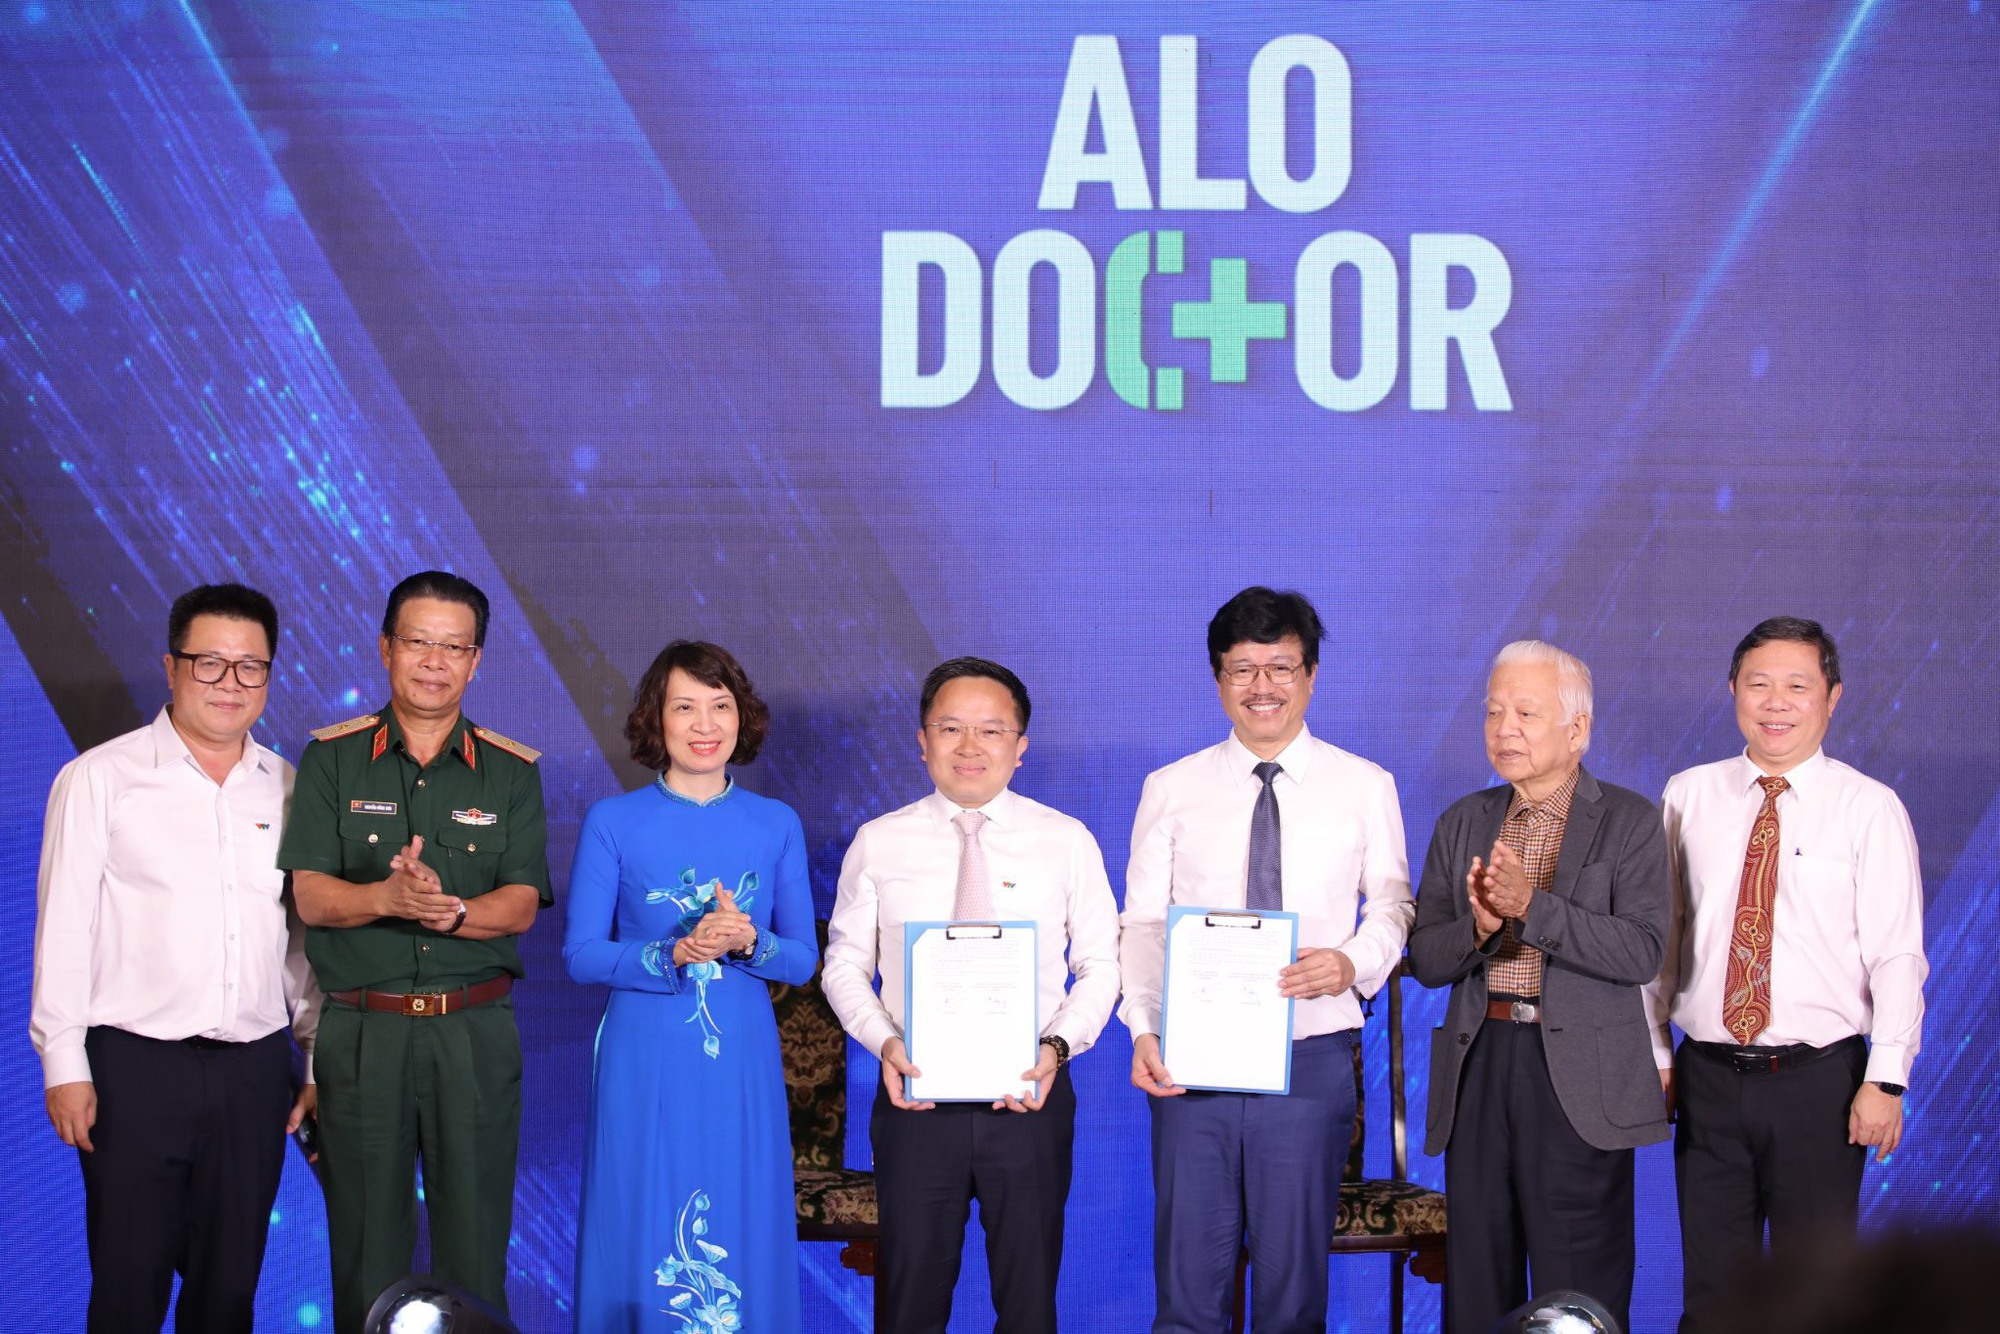 Ra mắt chương trình chuyên biệt về y tế "Alo Doctor" trên kênh VTV9